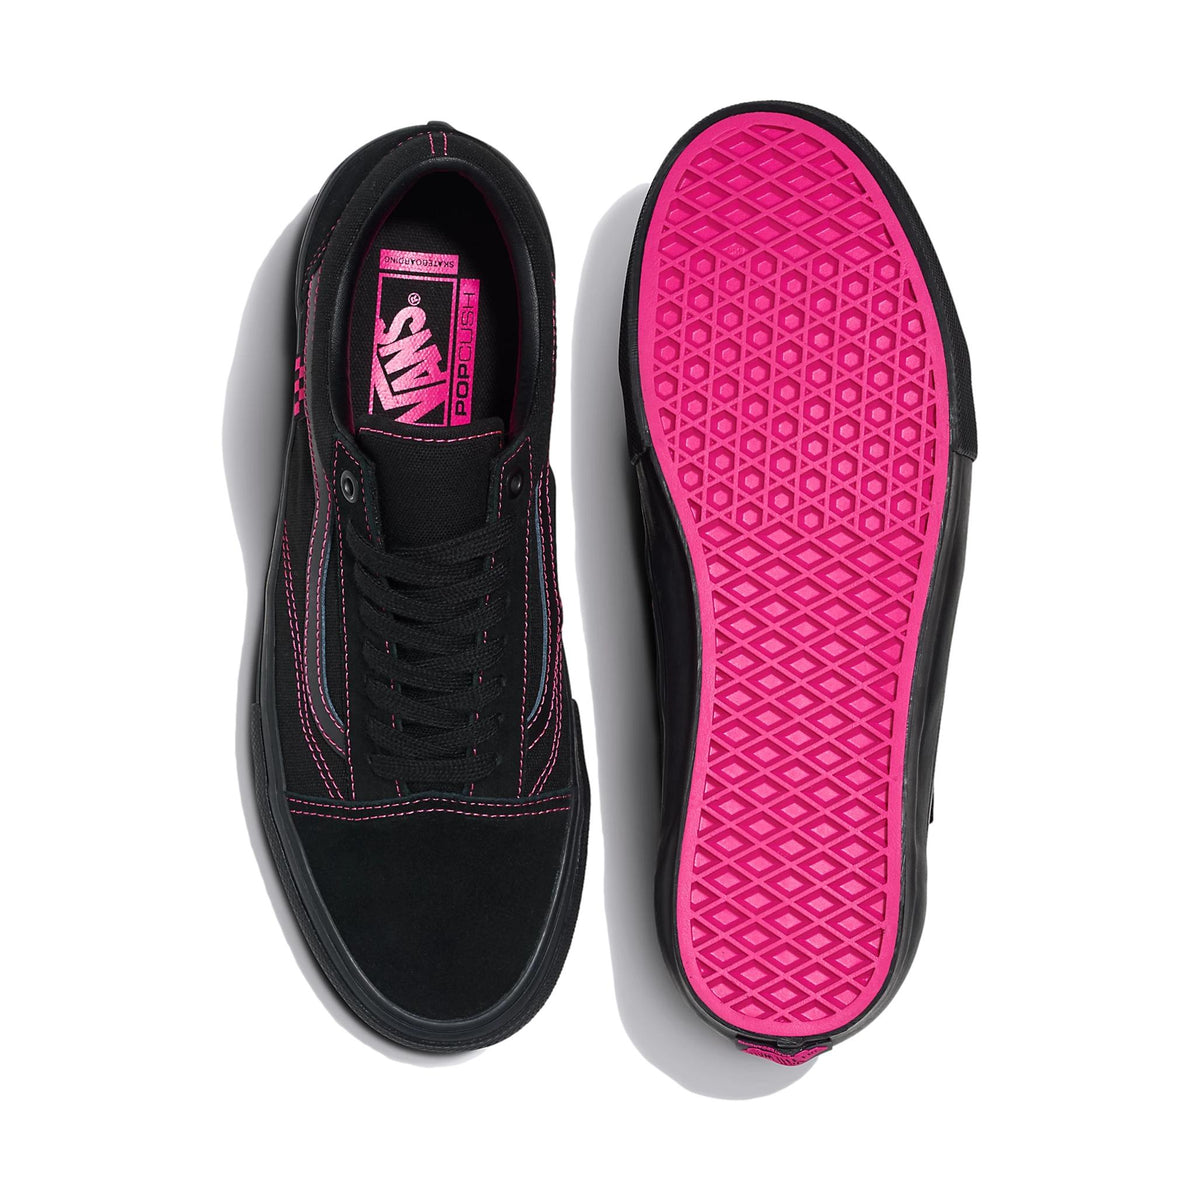 Vans Skate Old Skool Neon Black/Pink - Venue Skateboards